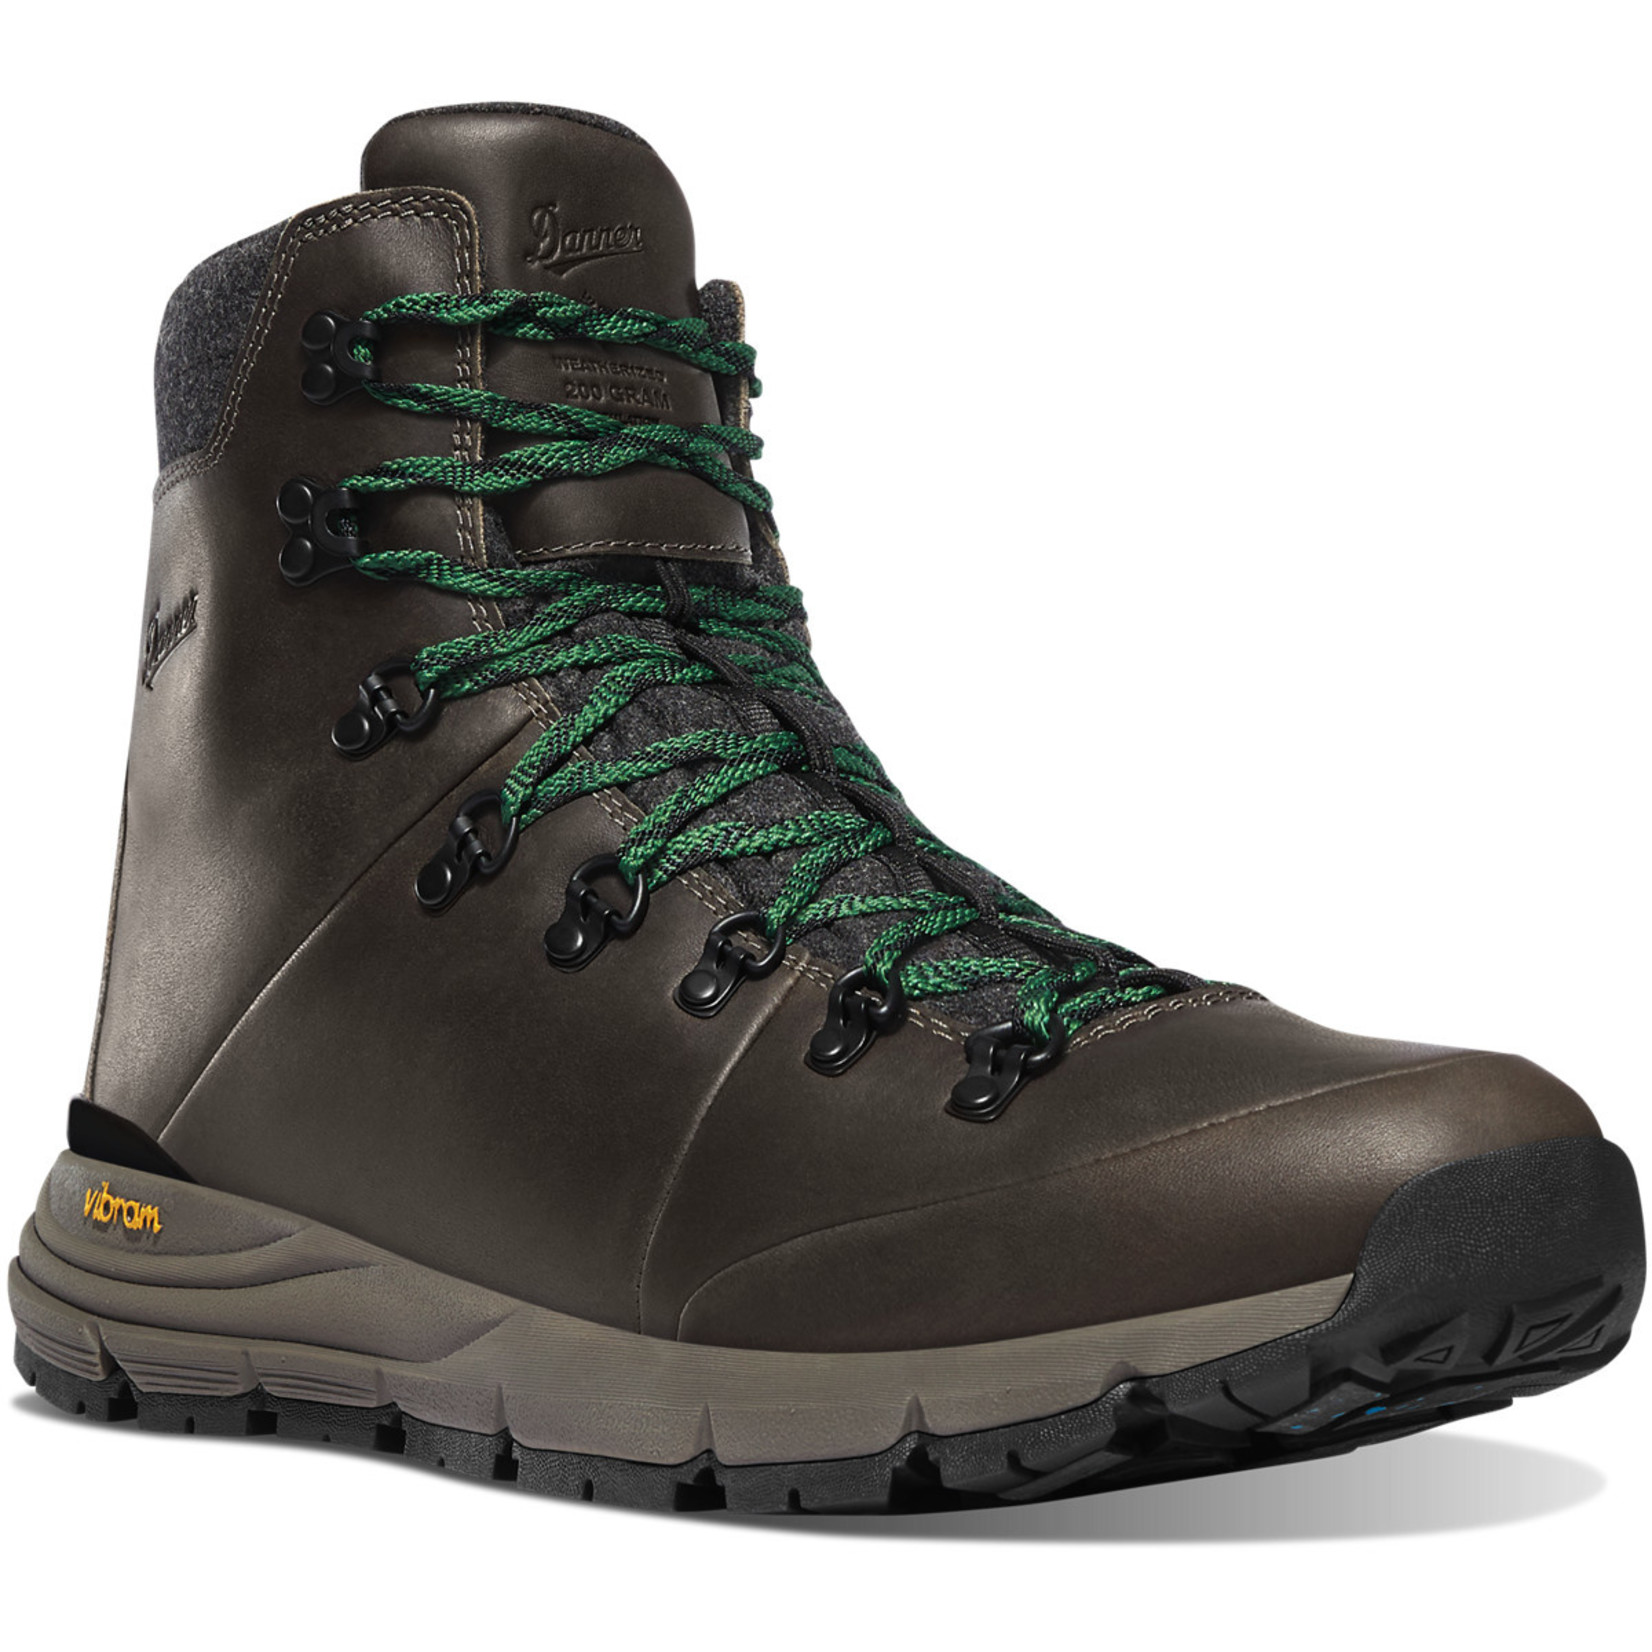 Danner Danner Arctic 600 Side-Zip Men’s Winter Hiking Boots